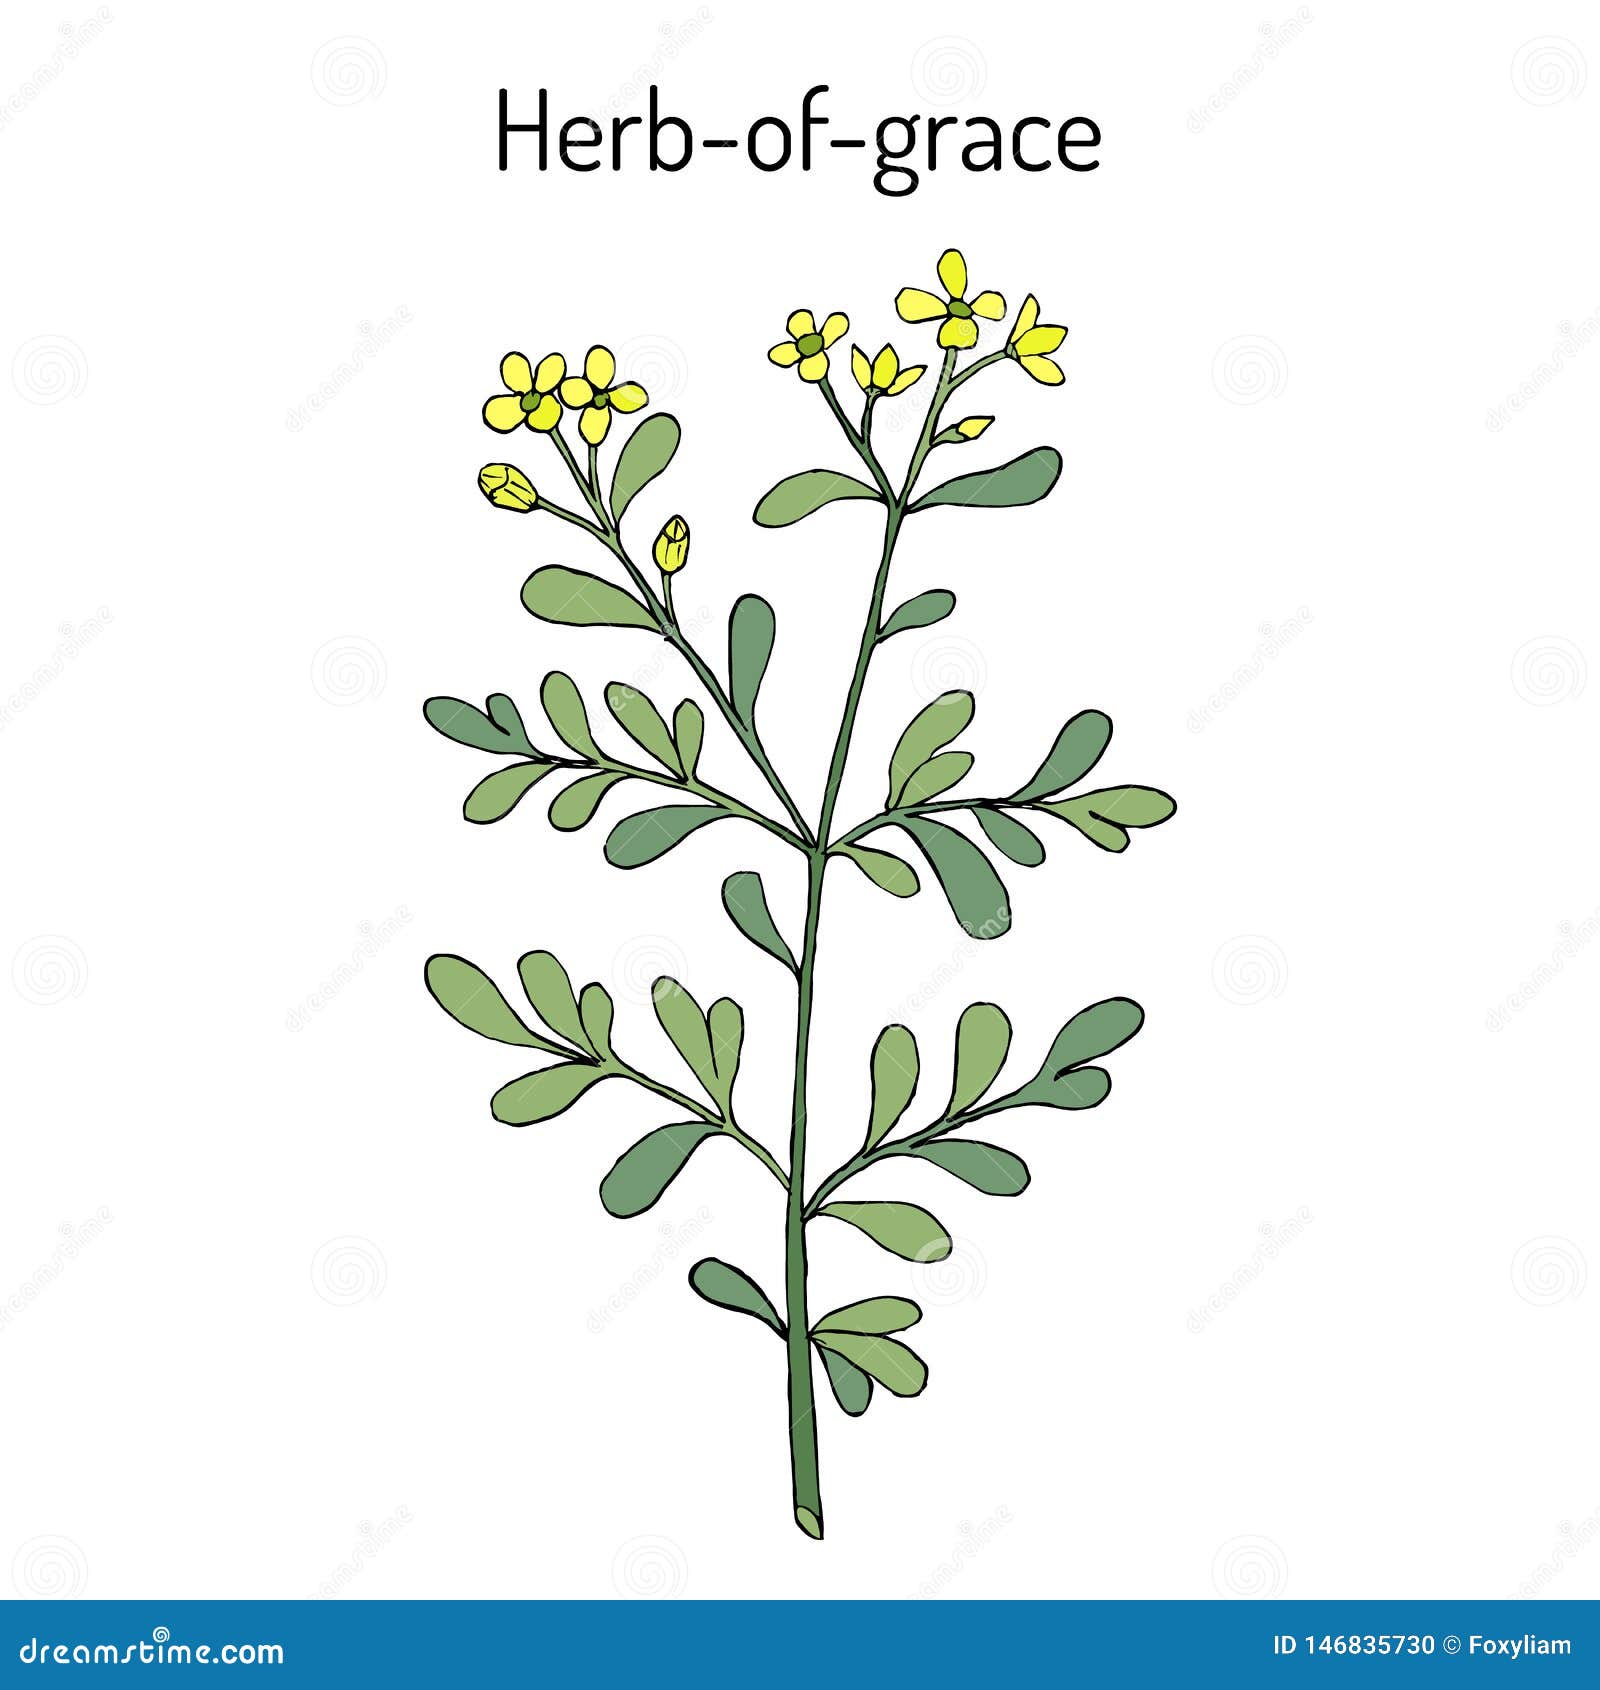 herb-of-grace ruta graveolens , or common rue, medicinal plant